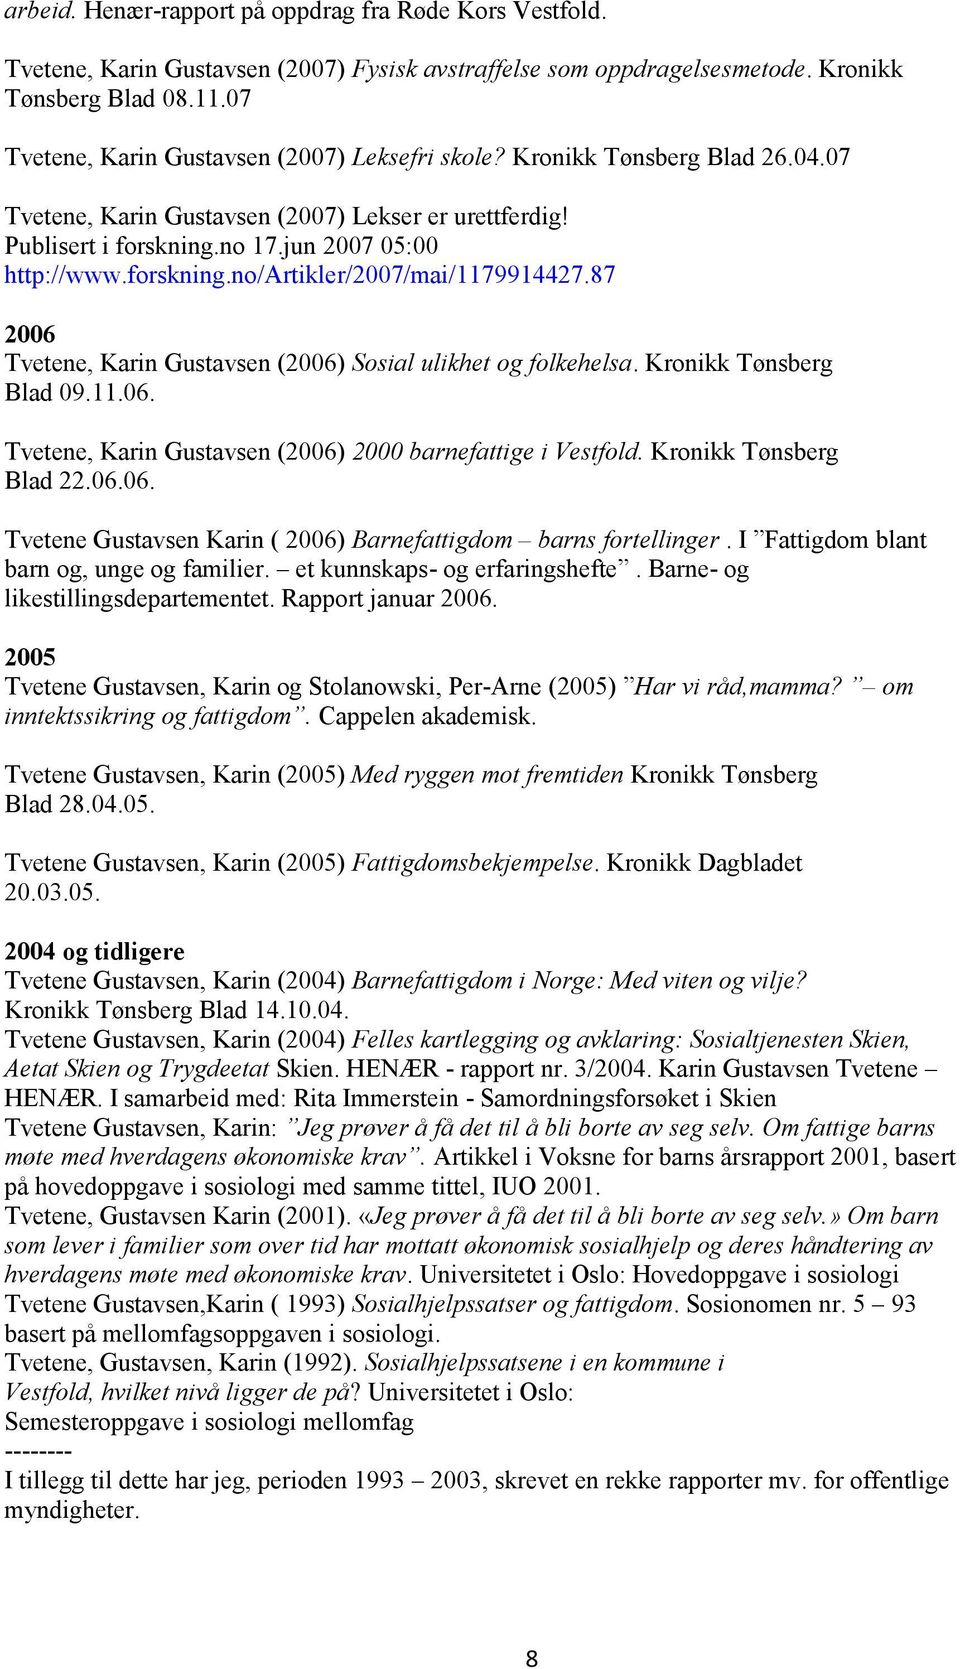 forskning.no/artikler/2007/mai/1179914427.87 2006 Tvetene, Karin Gustavsen (2006) Sosial ulikhet og folkehelsa. Kronikk Tønsberg Blad 09.11.06. Tvetene, Karin Gustavsen (2006) 2000 barnefattige i Vestfold.